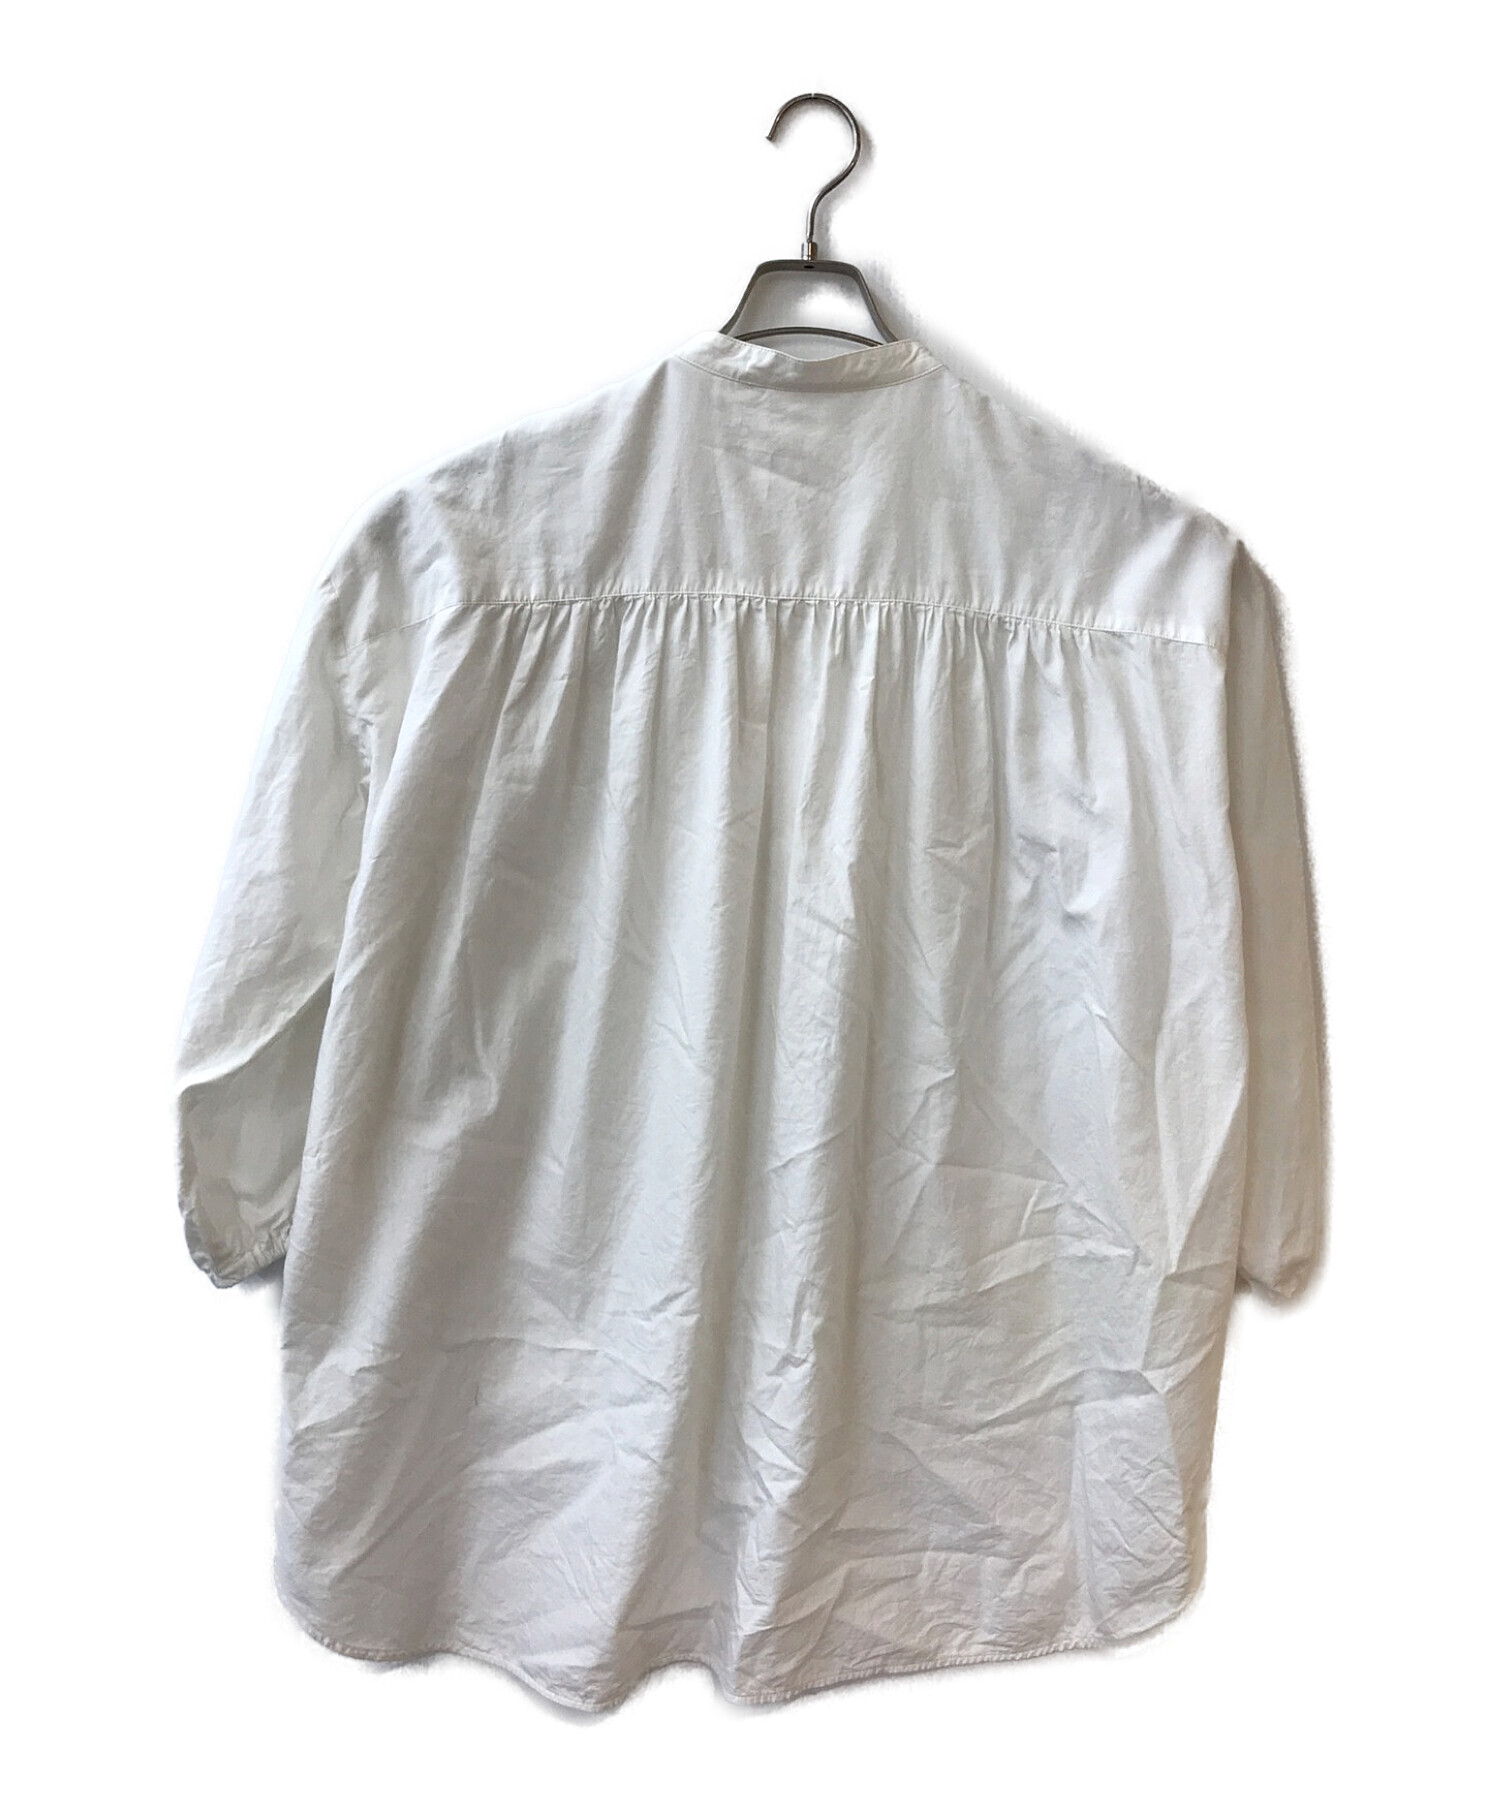 yori (ヨリ) バックギャザーシャツ ホワイト サイズ:F